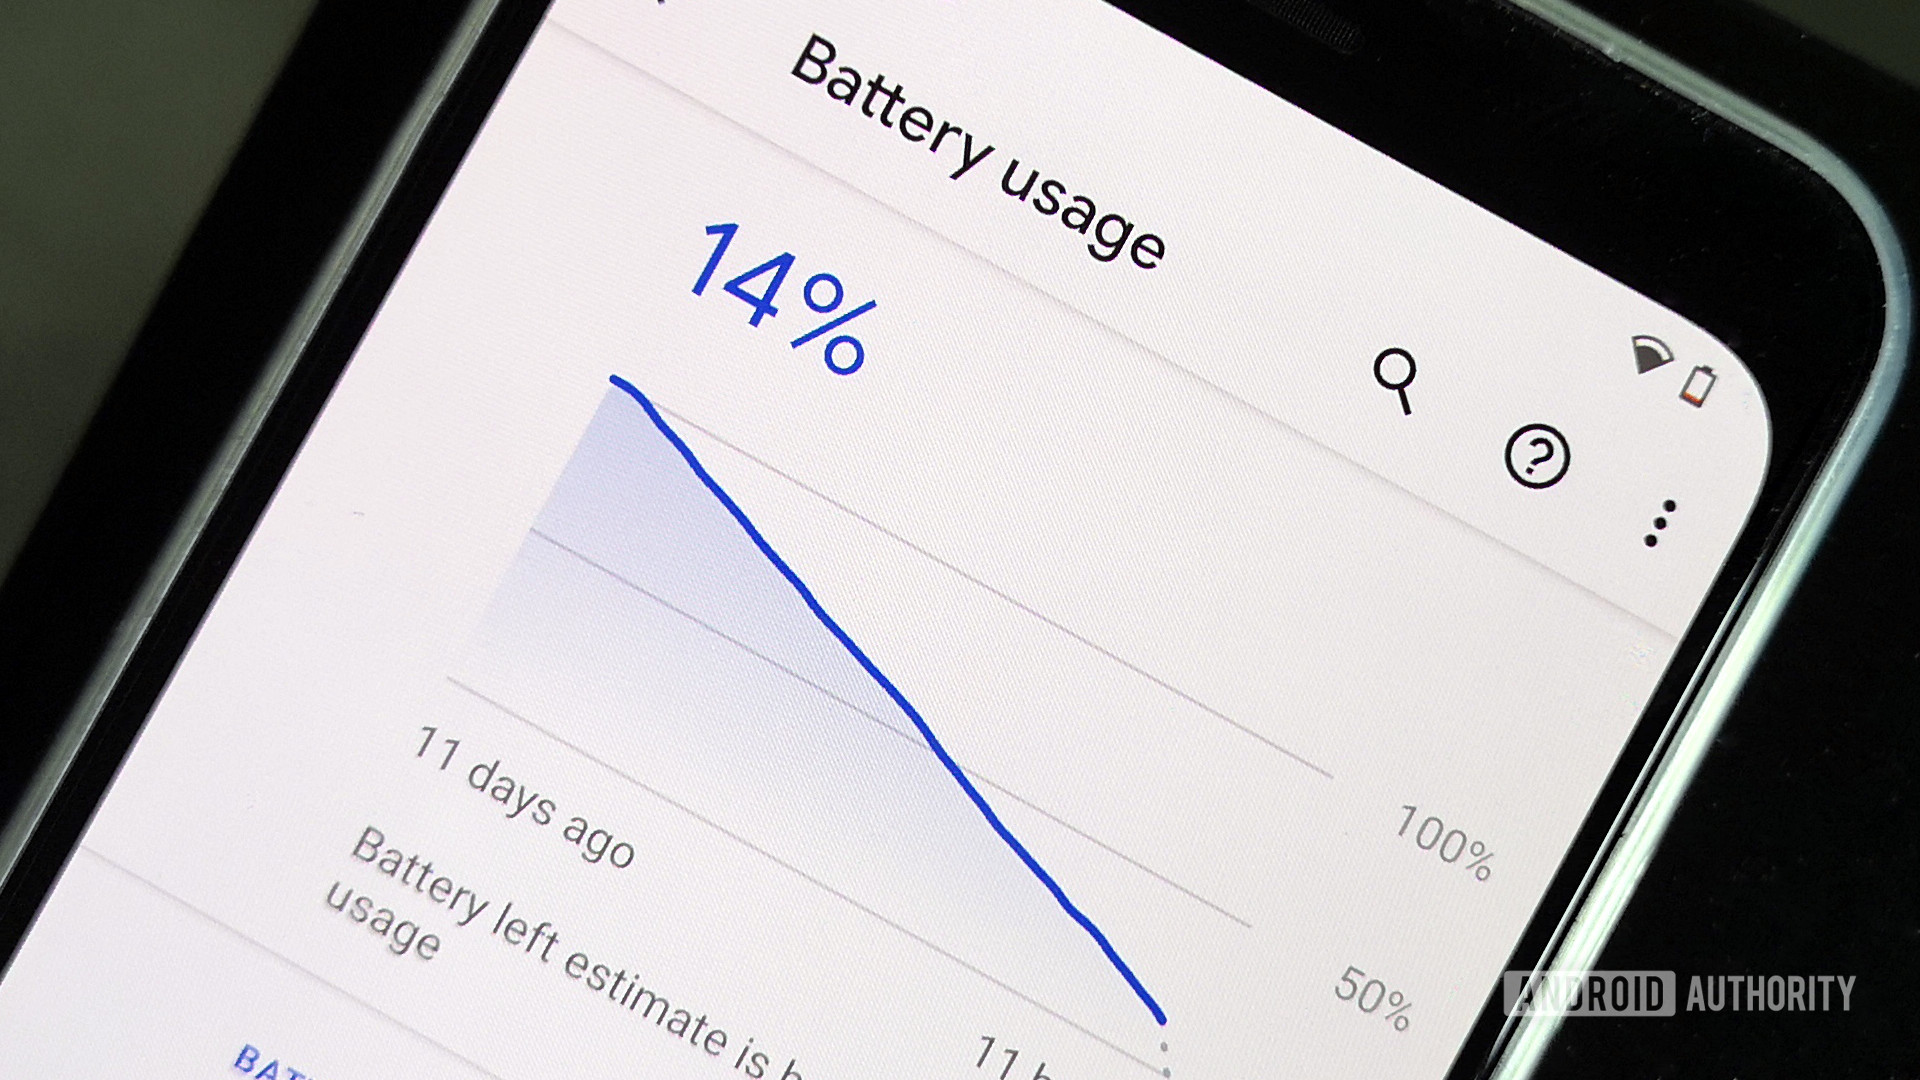 standby battery usage